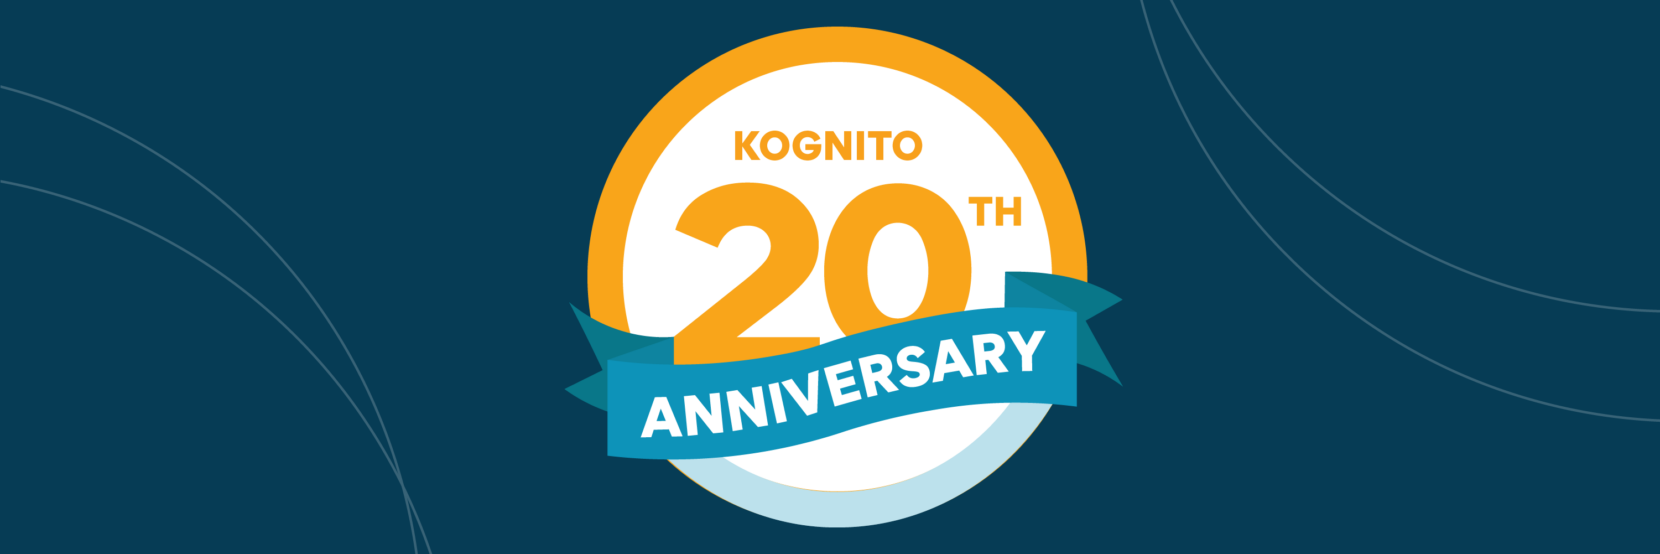 Kognito Celebrates Its 20th Anniversary